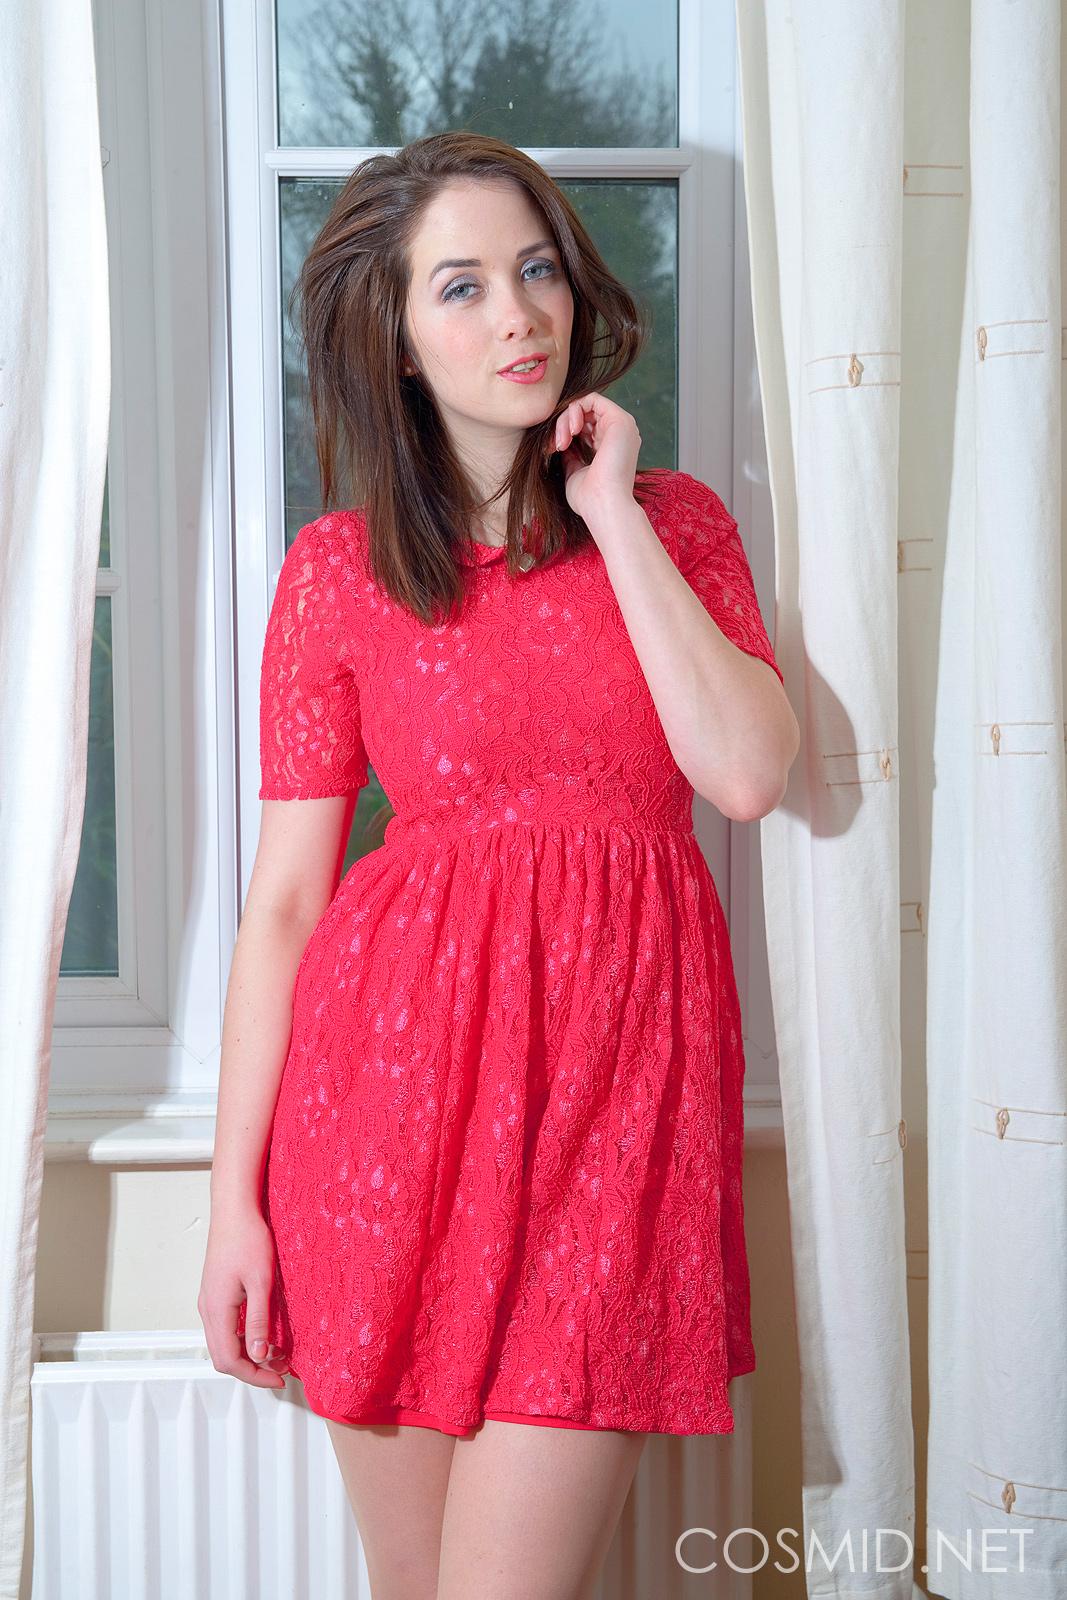 Fotos de elizabeth james con su vestido rojo
 #54149433